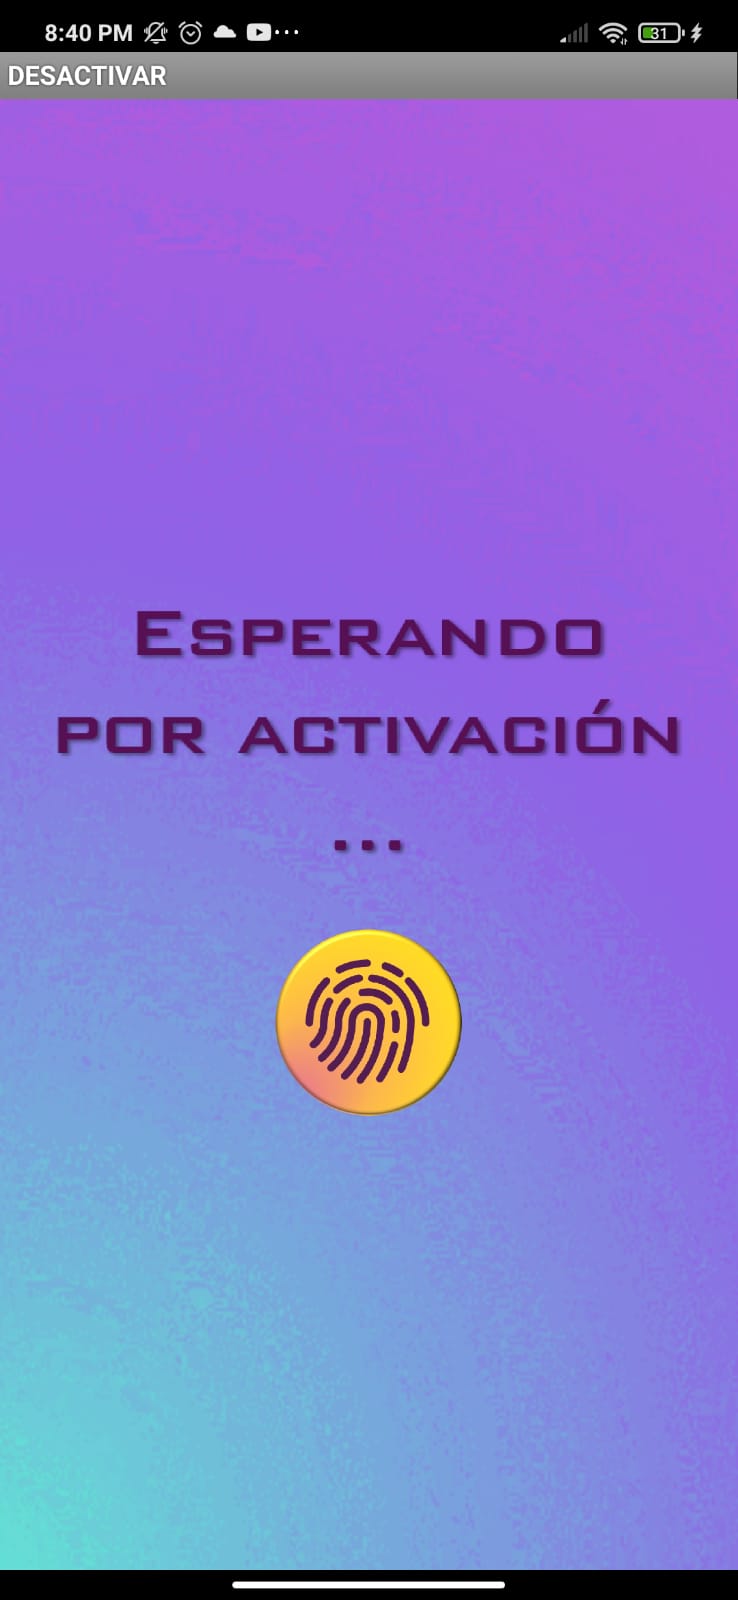 Leyenda que dice Esperando activación y un ícono de huella digital